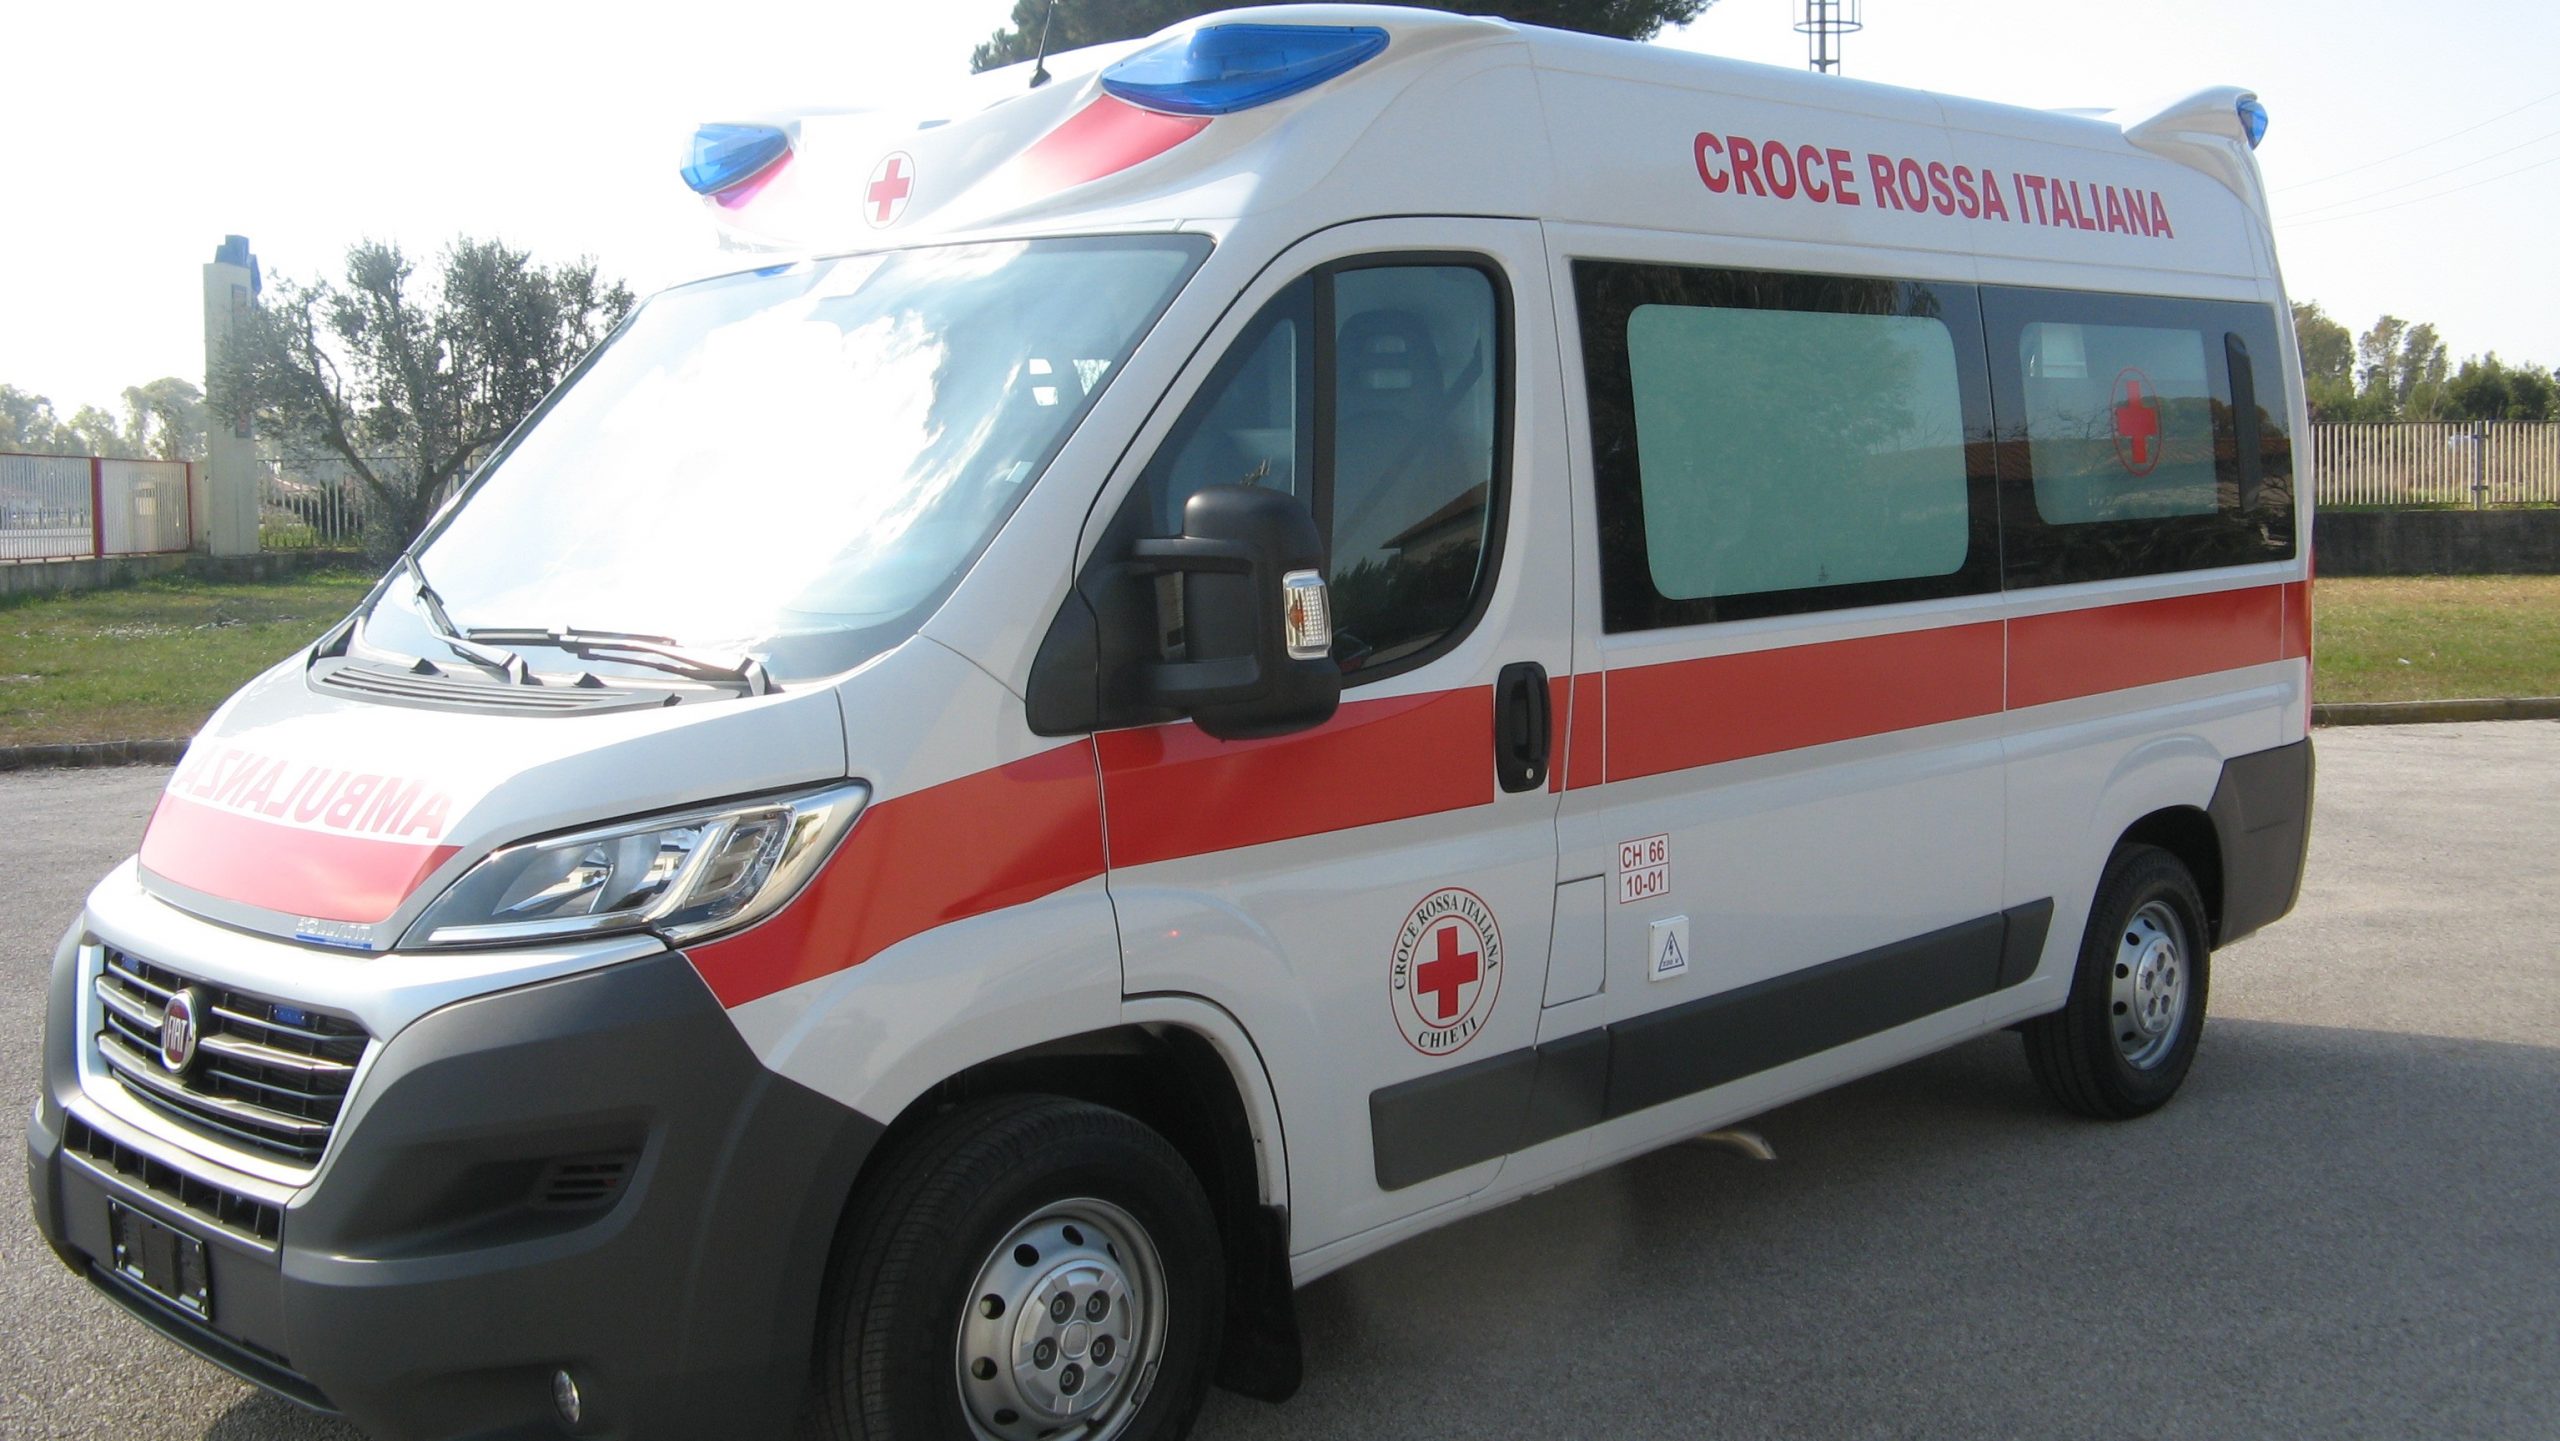 Ambulanza della morte a Catania: uccidevano anziani per vendere i corpi alle pompe funebri